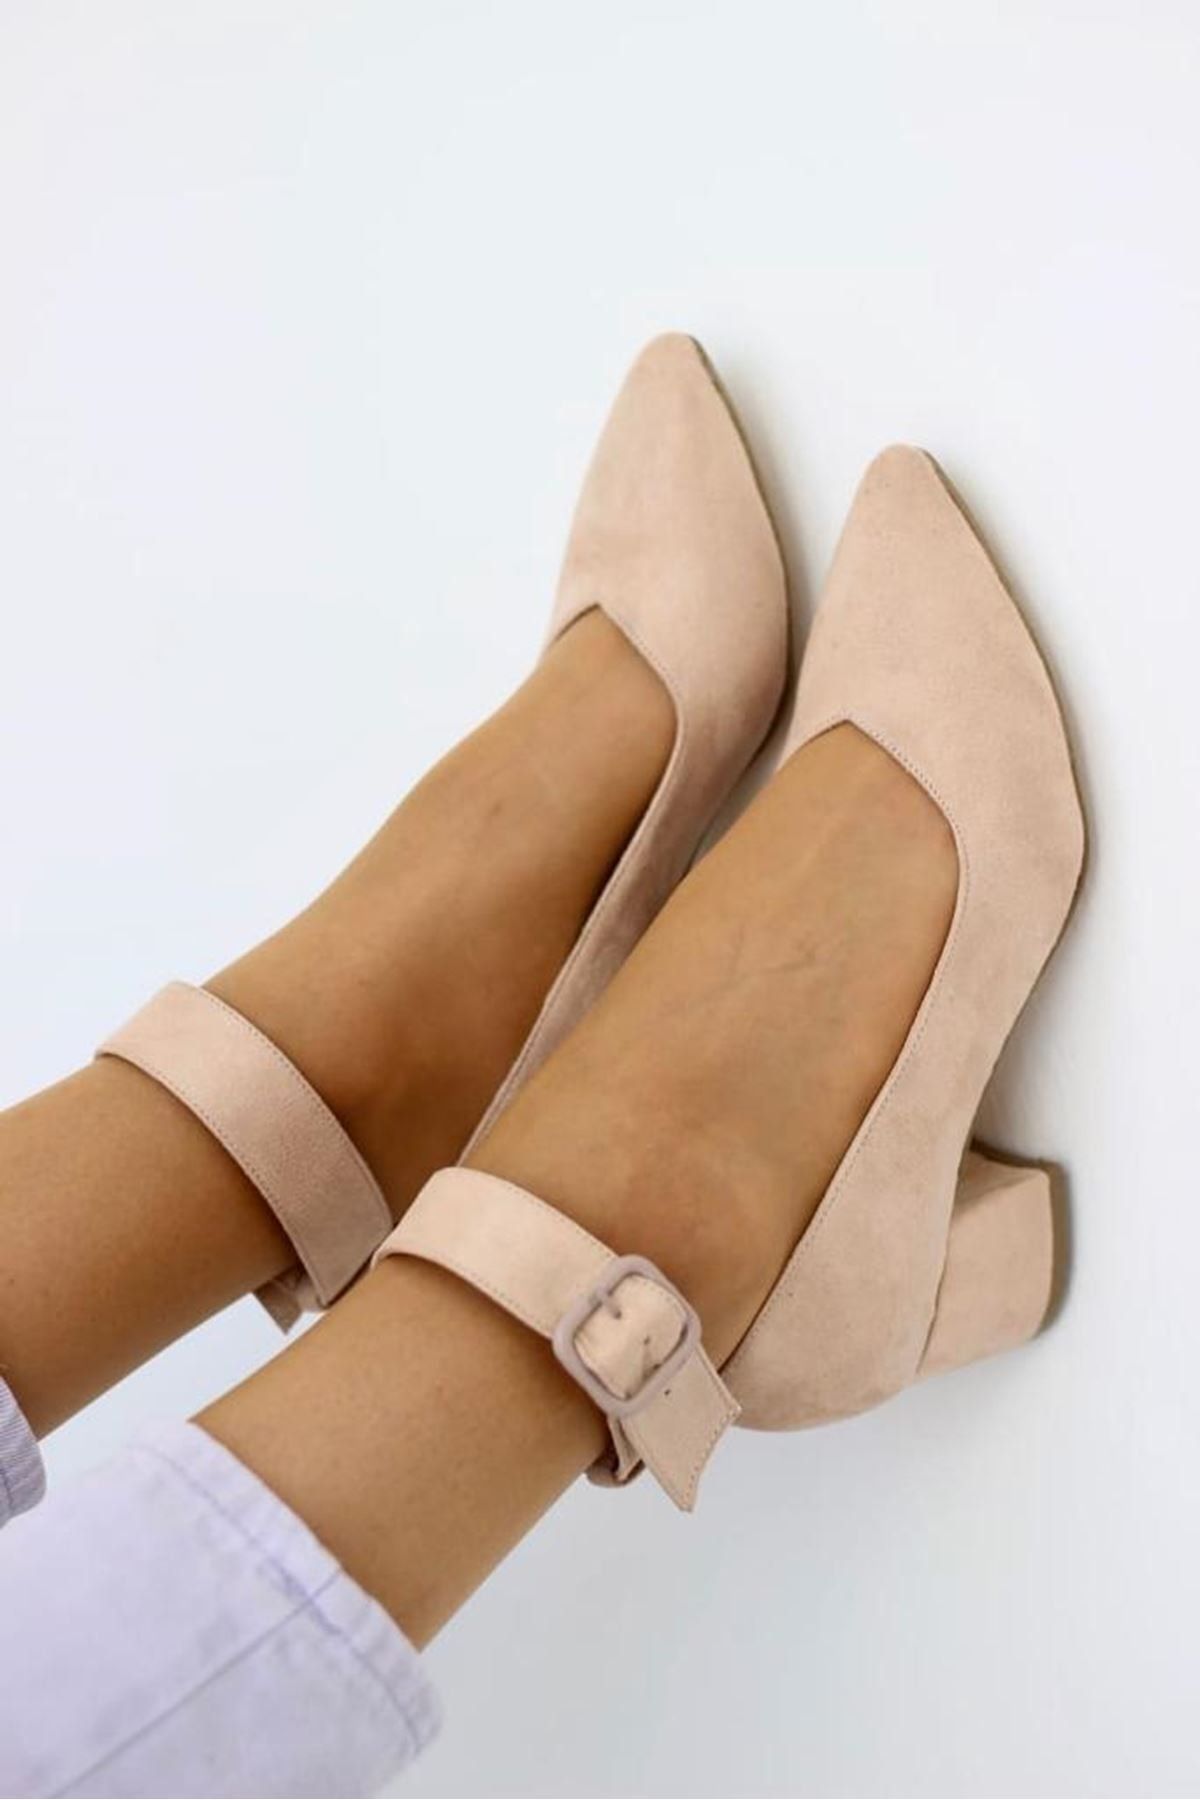 LAL SHOES & BAGS Bilekten Kemer Detaylı Kadın Topuklu Ayakkabı-s. Vizon